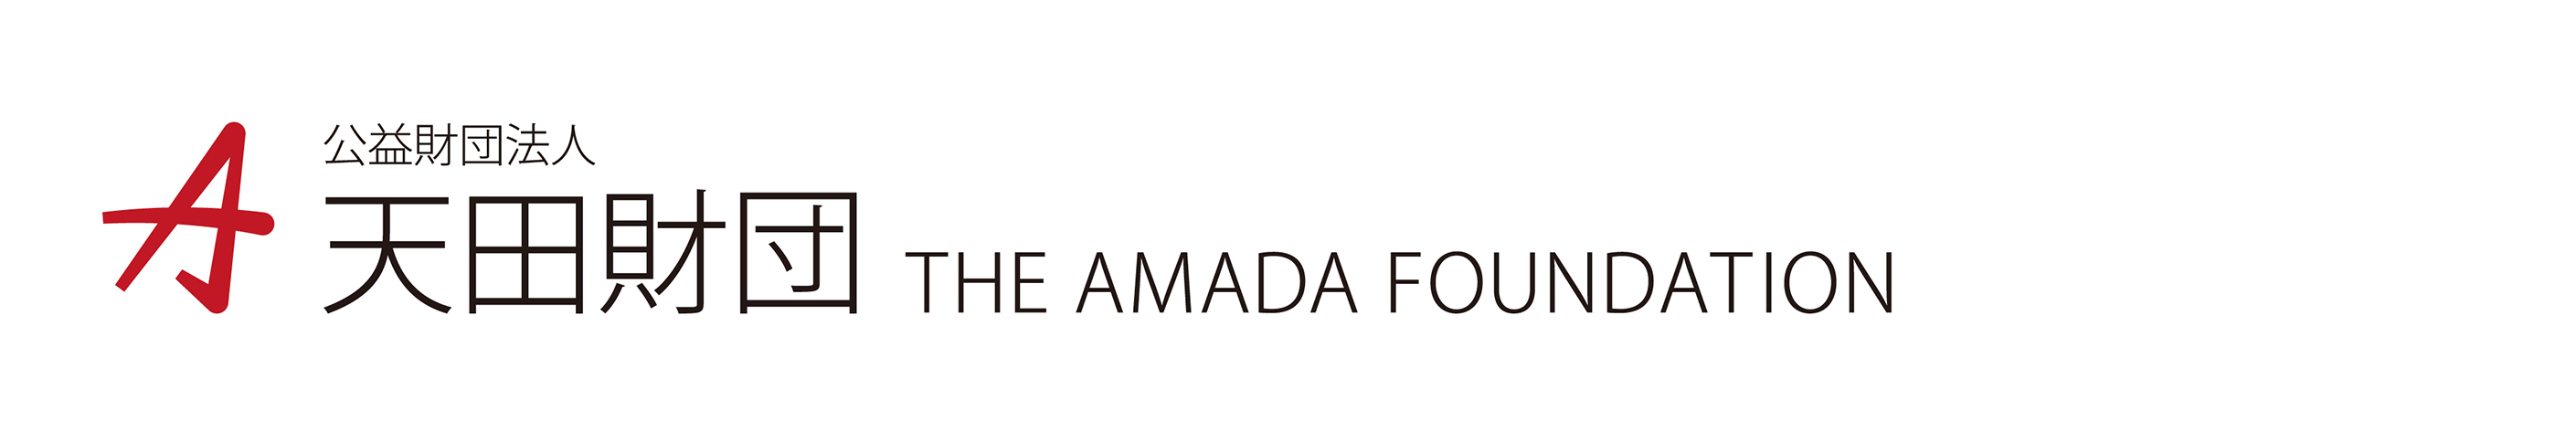 THE AMADA FOUNDATION